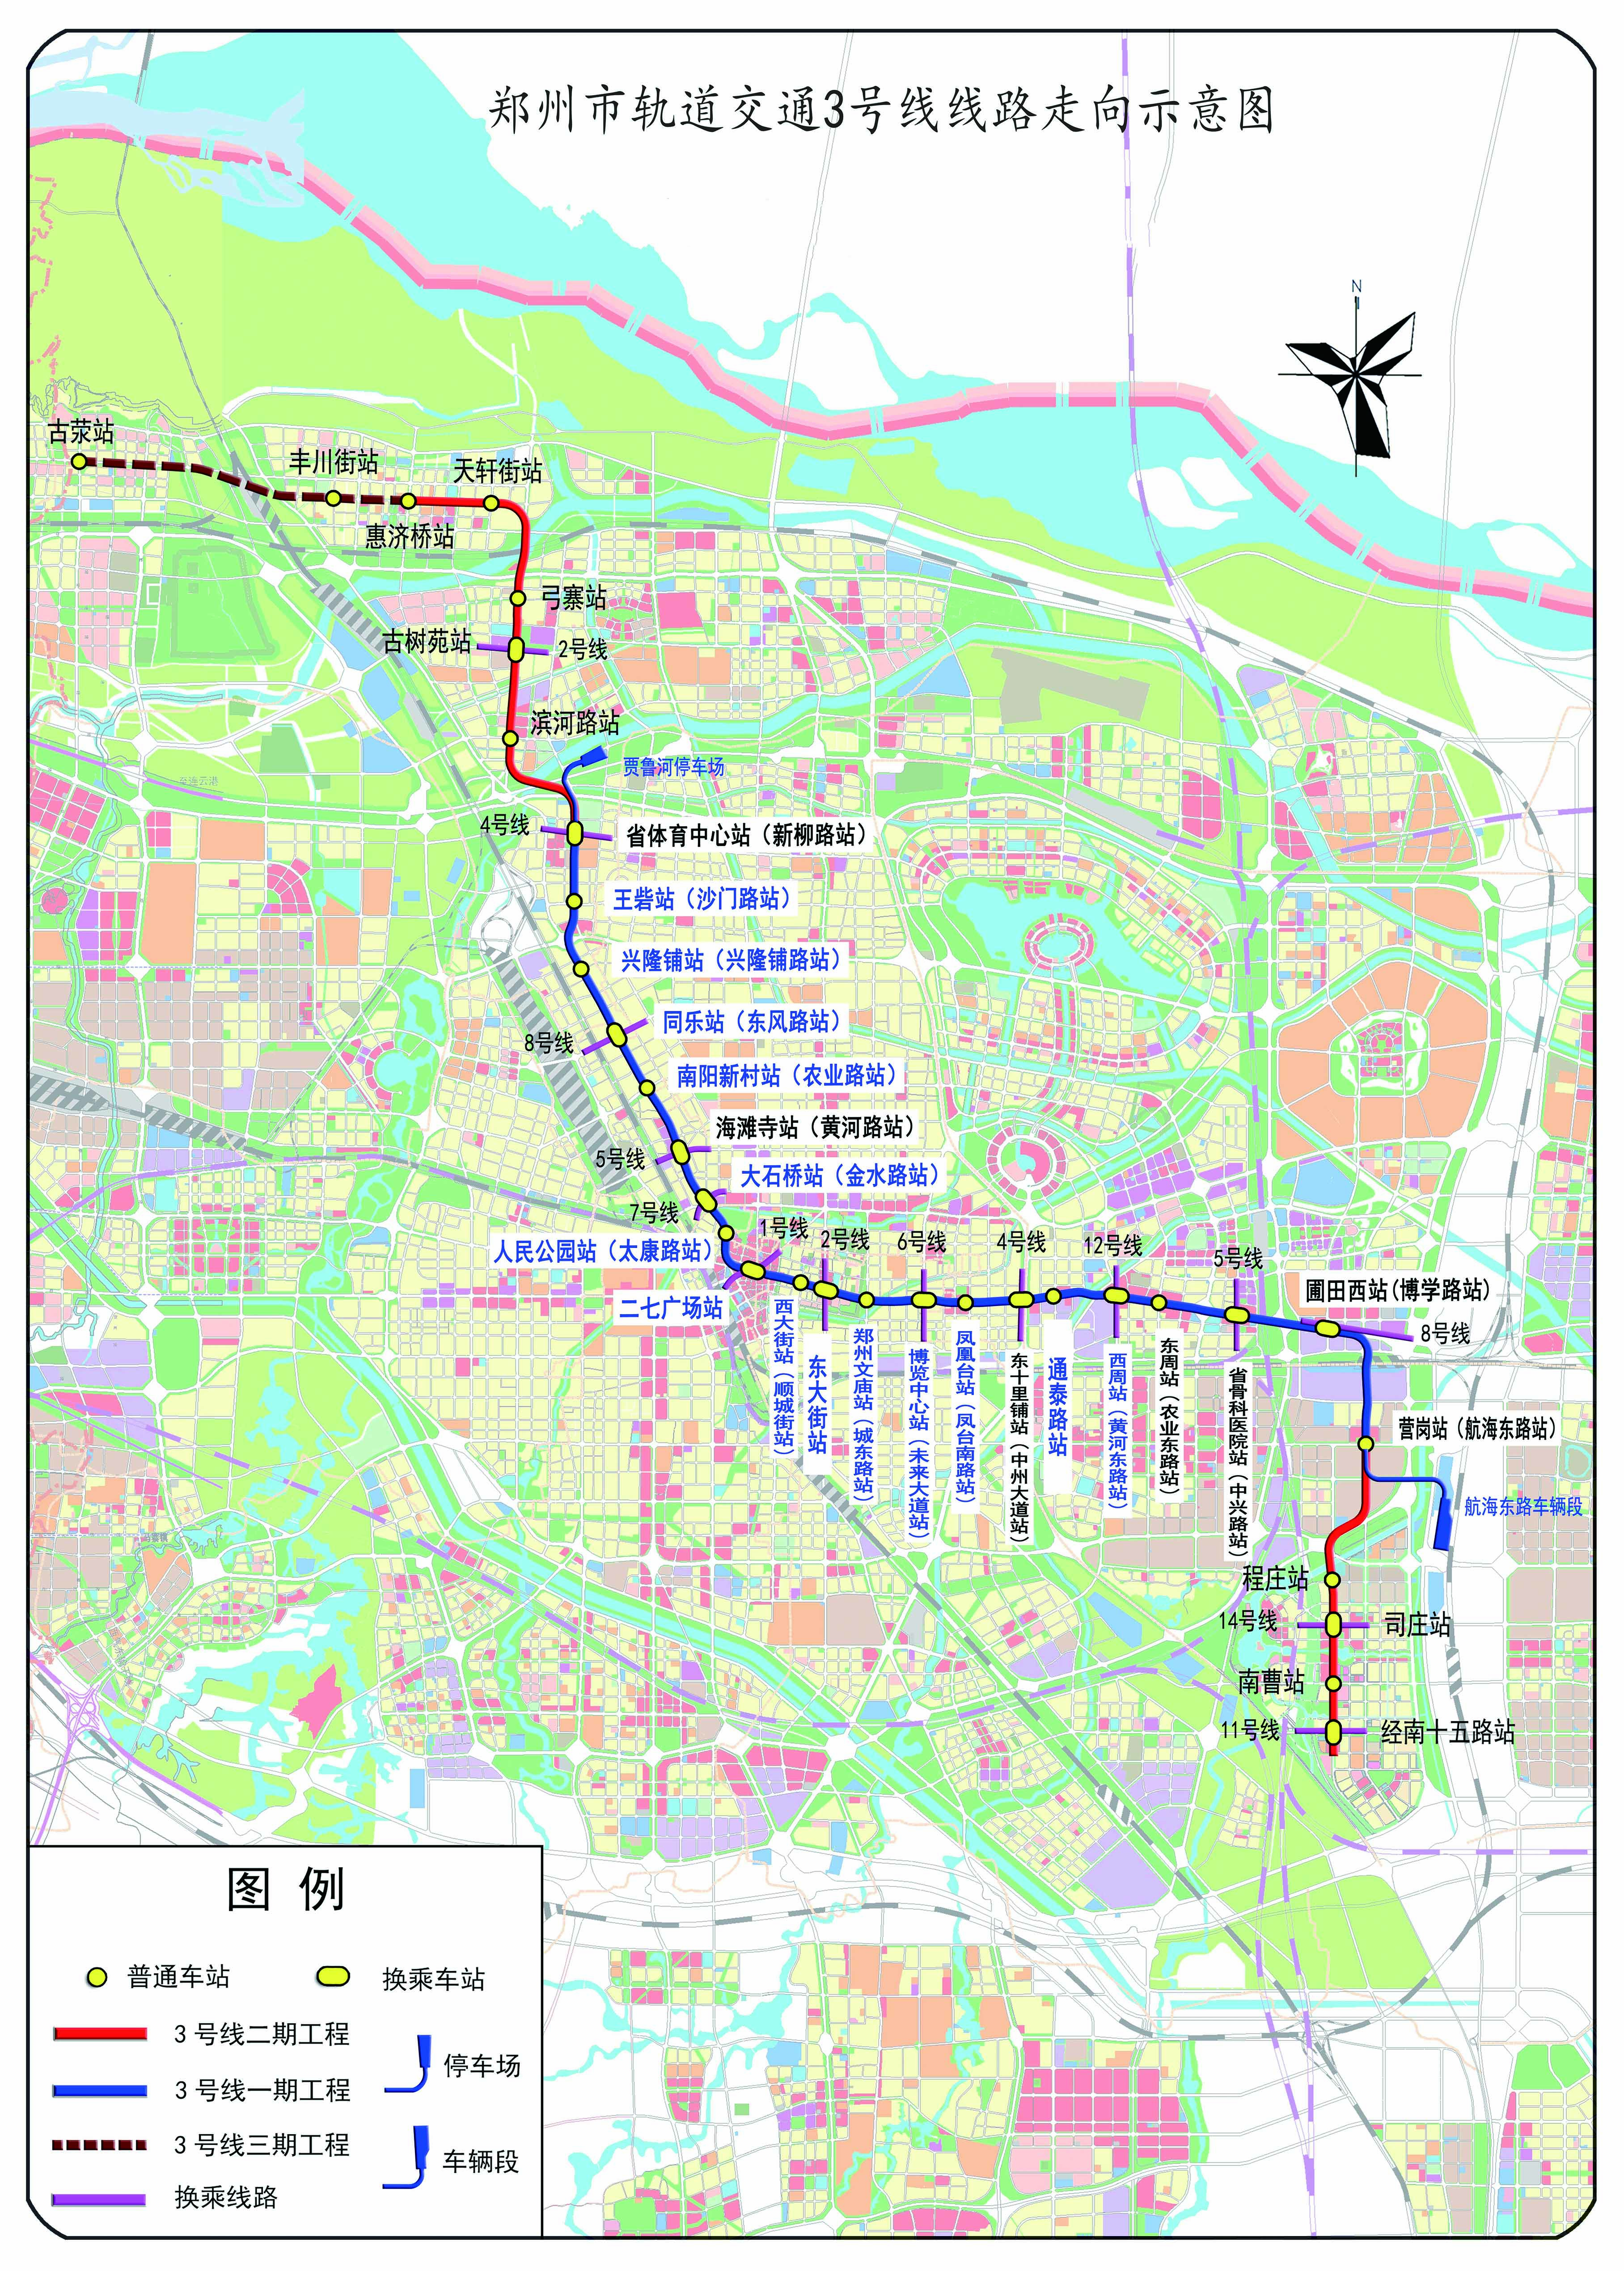 【豫建郑3】郑州地铁3号线一期工程正式迎来开通初期运营